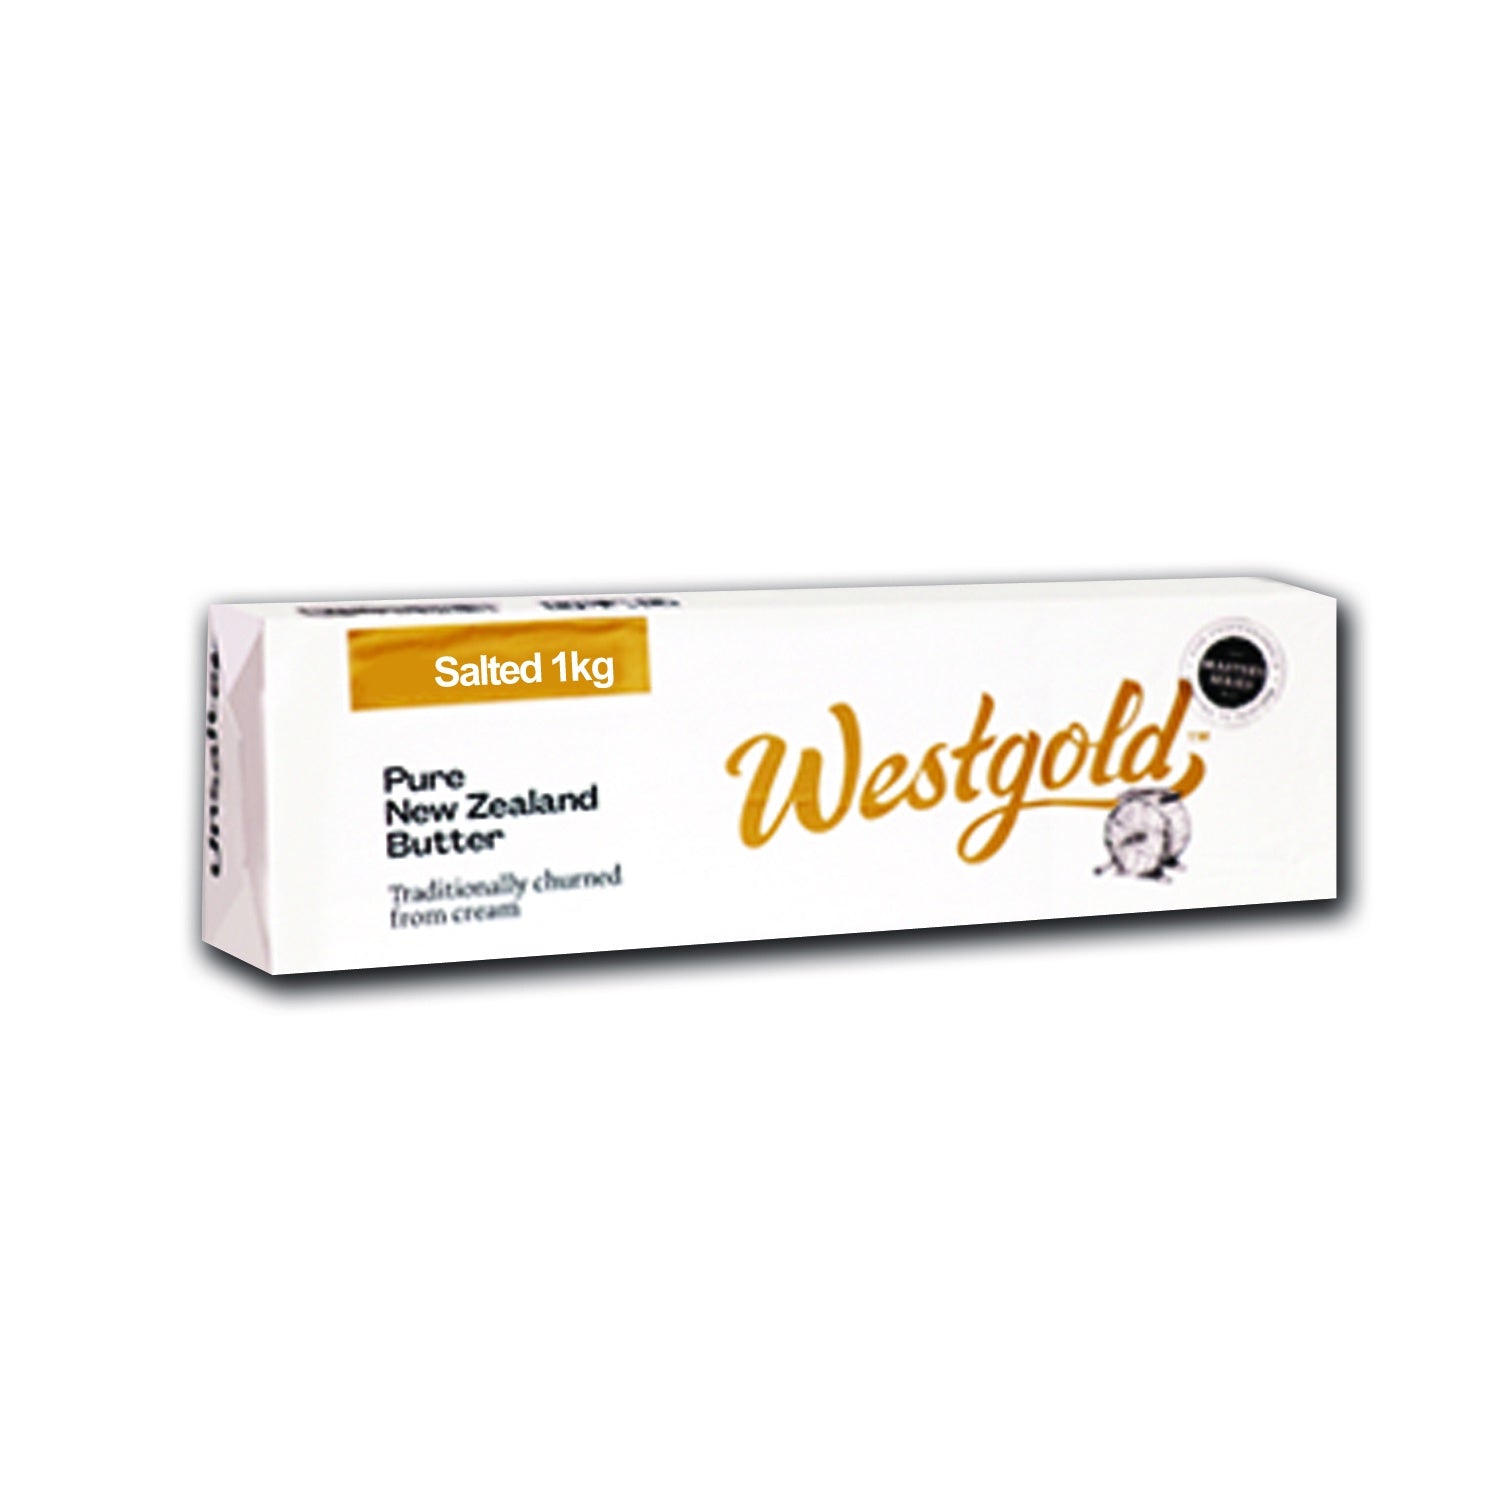 Westgold Pure New Zealand Butter Block Salted 1kg